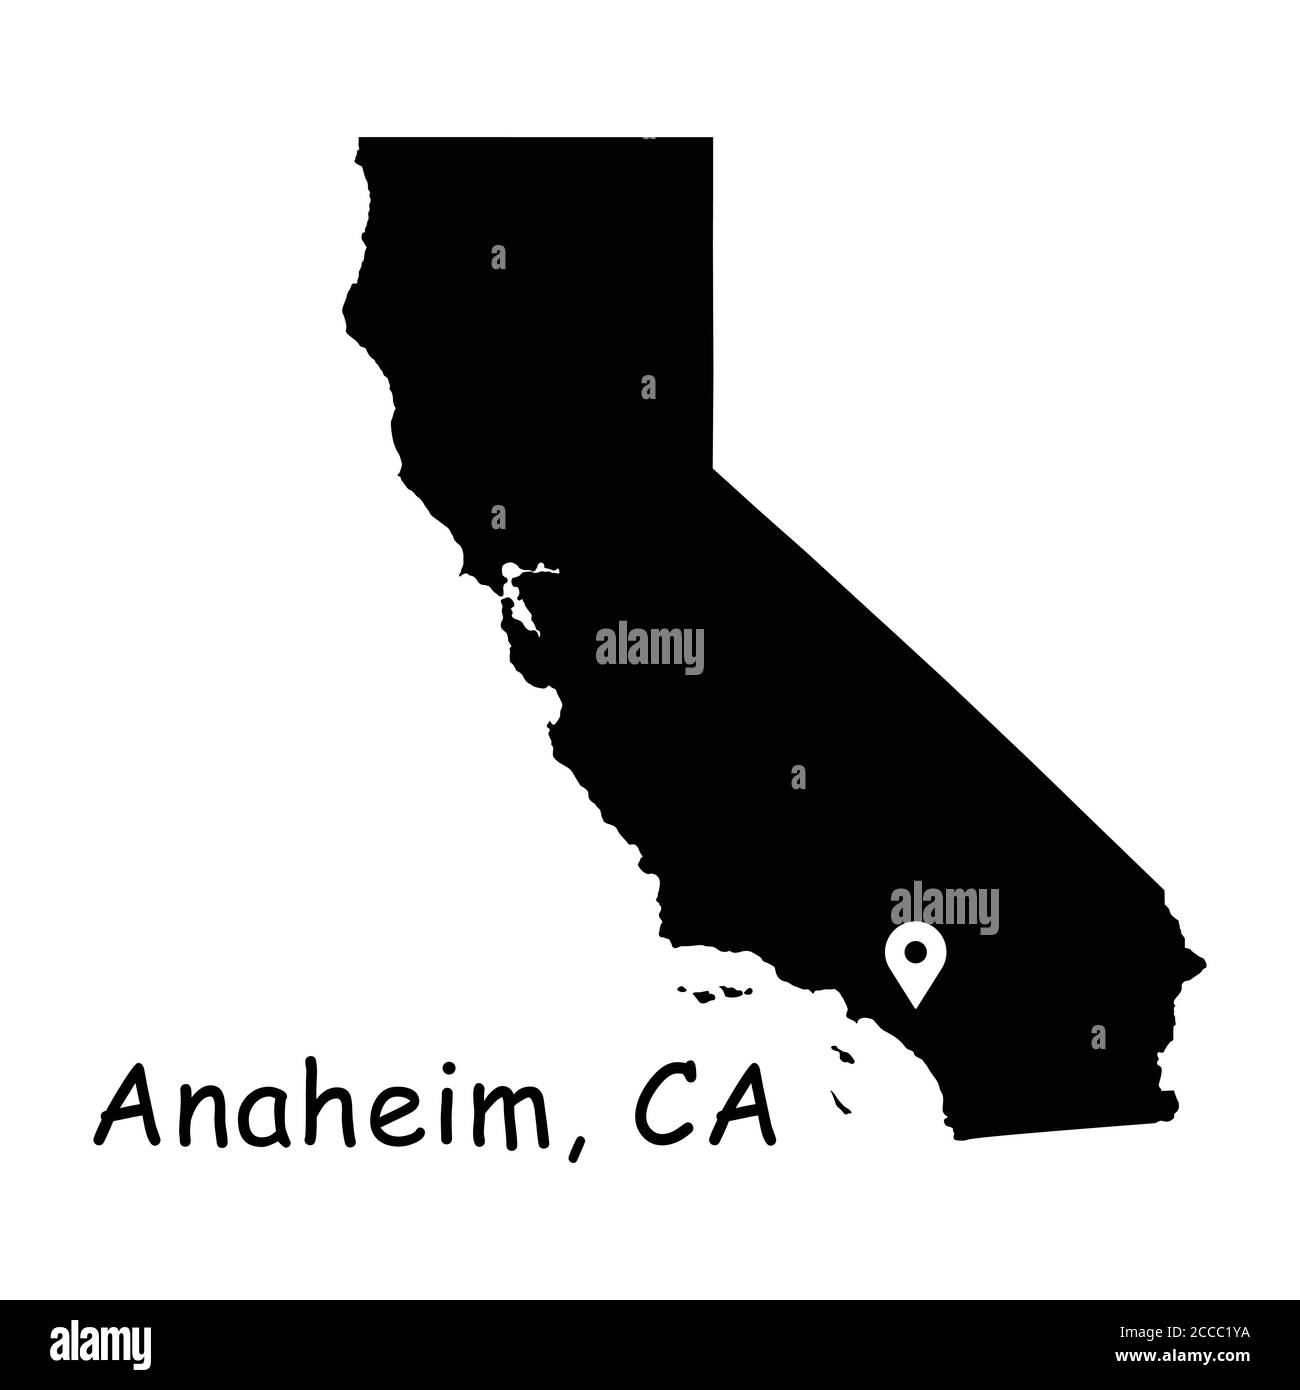 Anaheim sulla California state Map. Mappa dettagliata dello stato della CA con pin sulla città di Anaheim. Mappa vettoriale silhouette nera isolata su sfondo bianco. Illustrazione Vettoriale